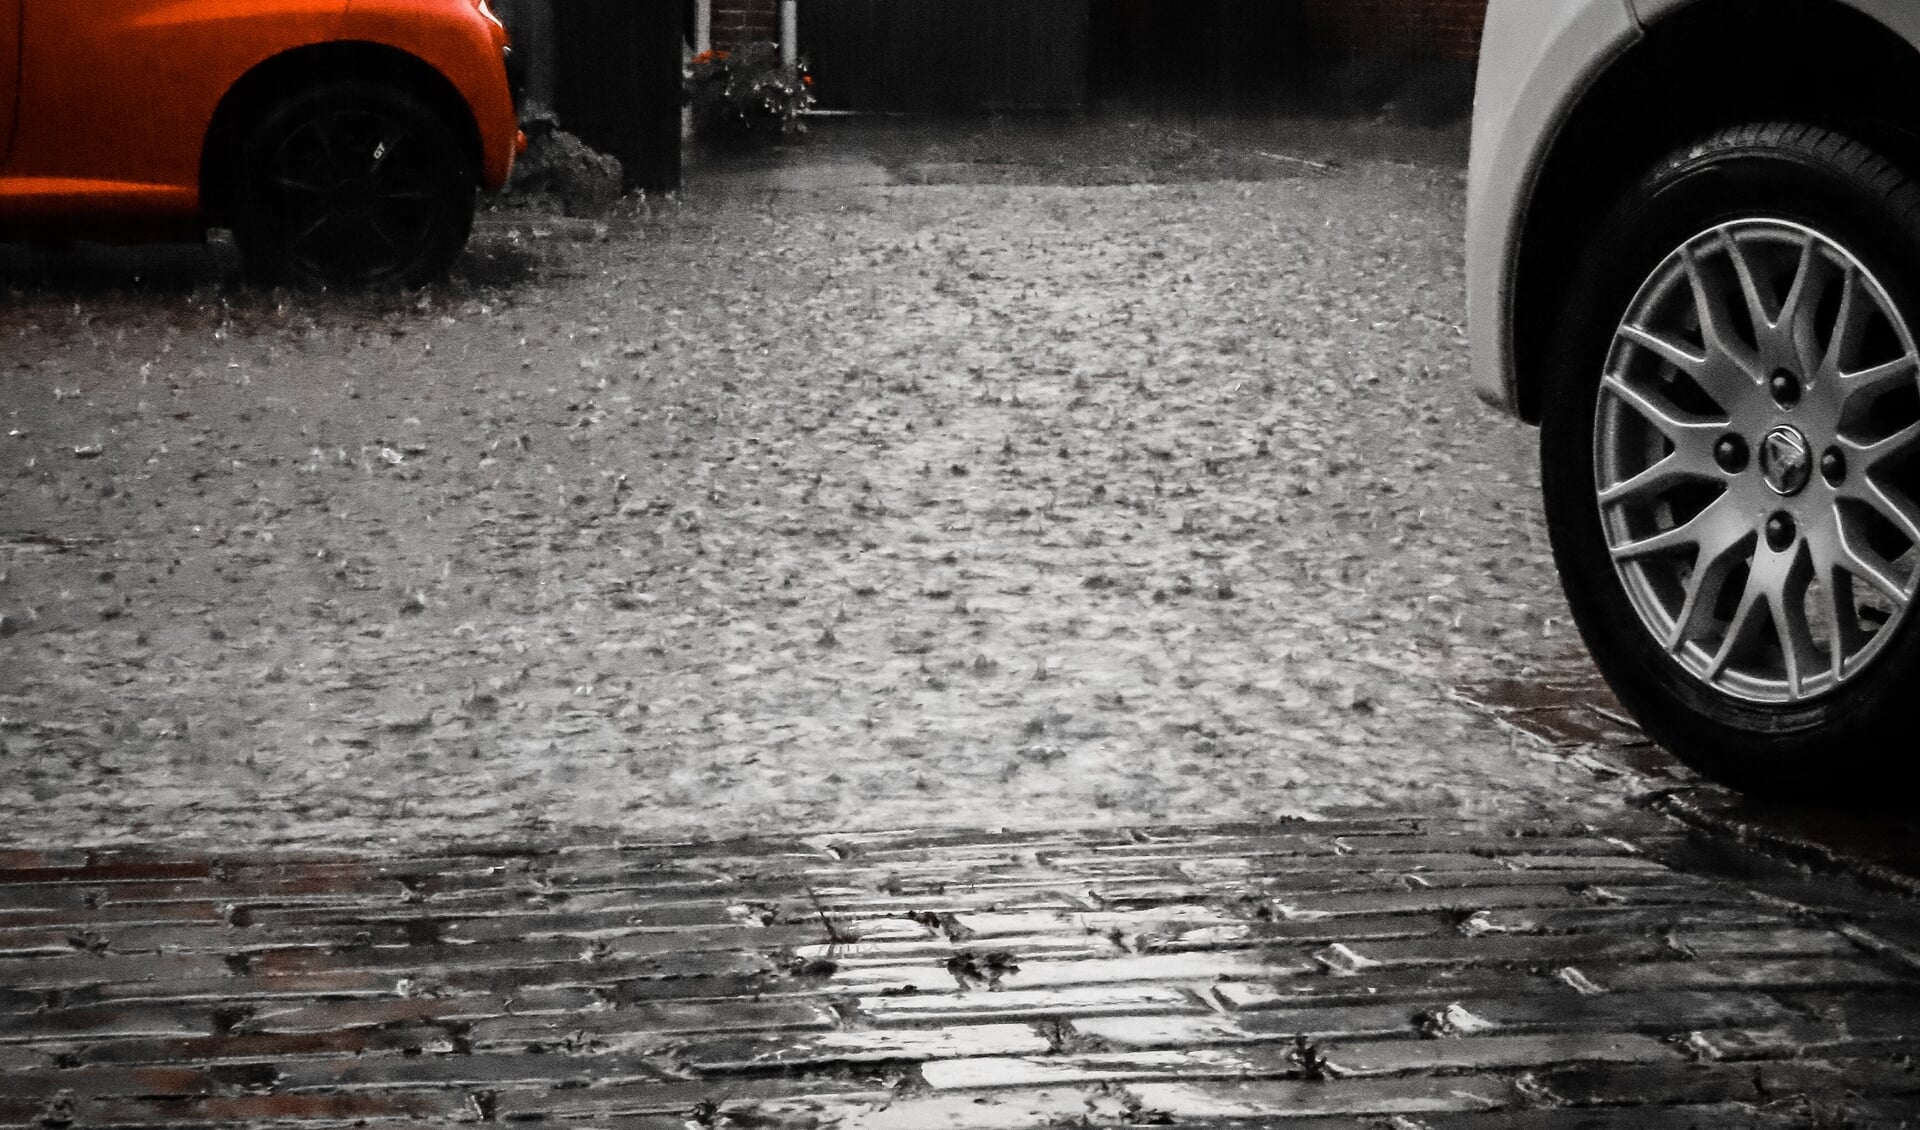 De regen klettert op straat.